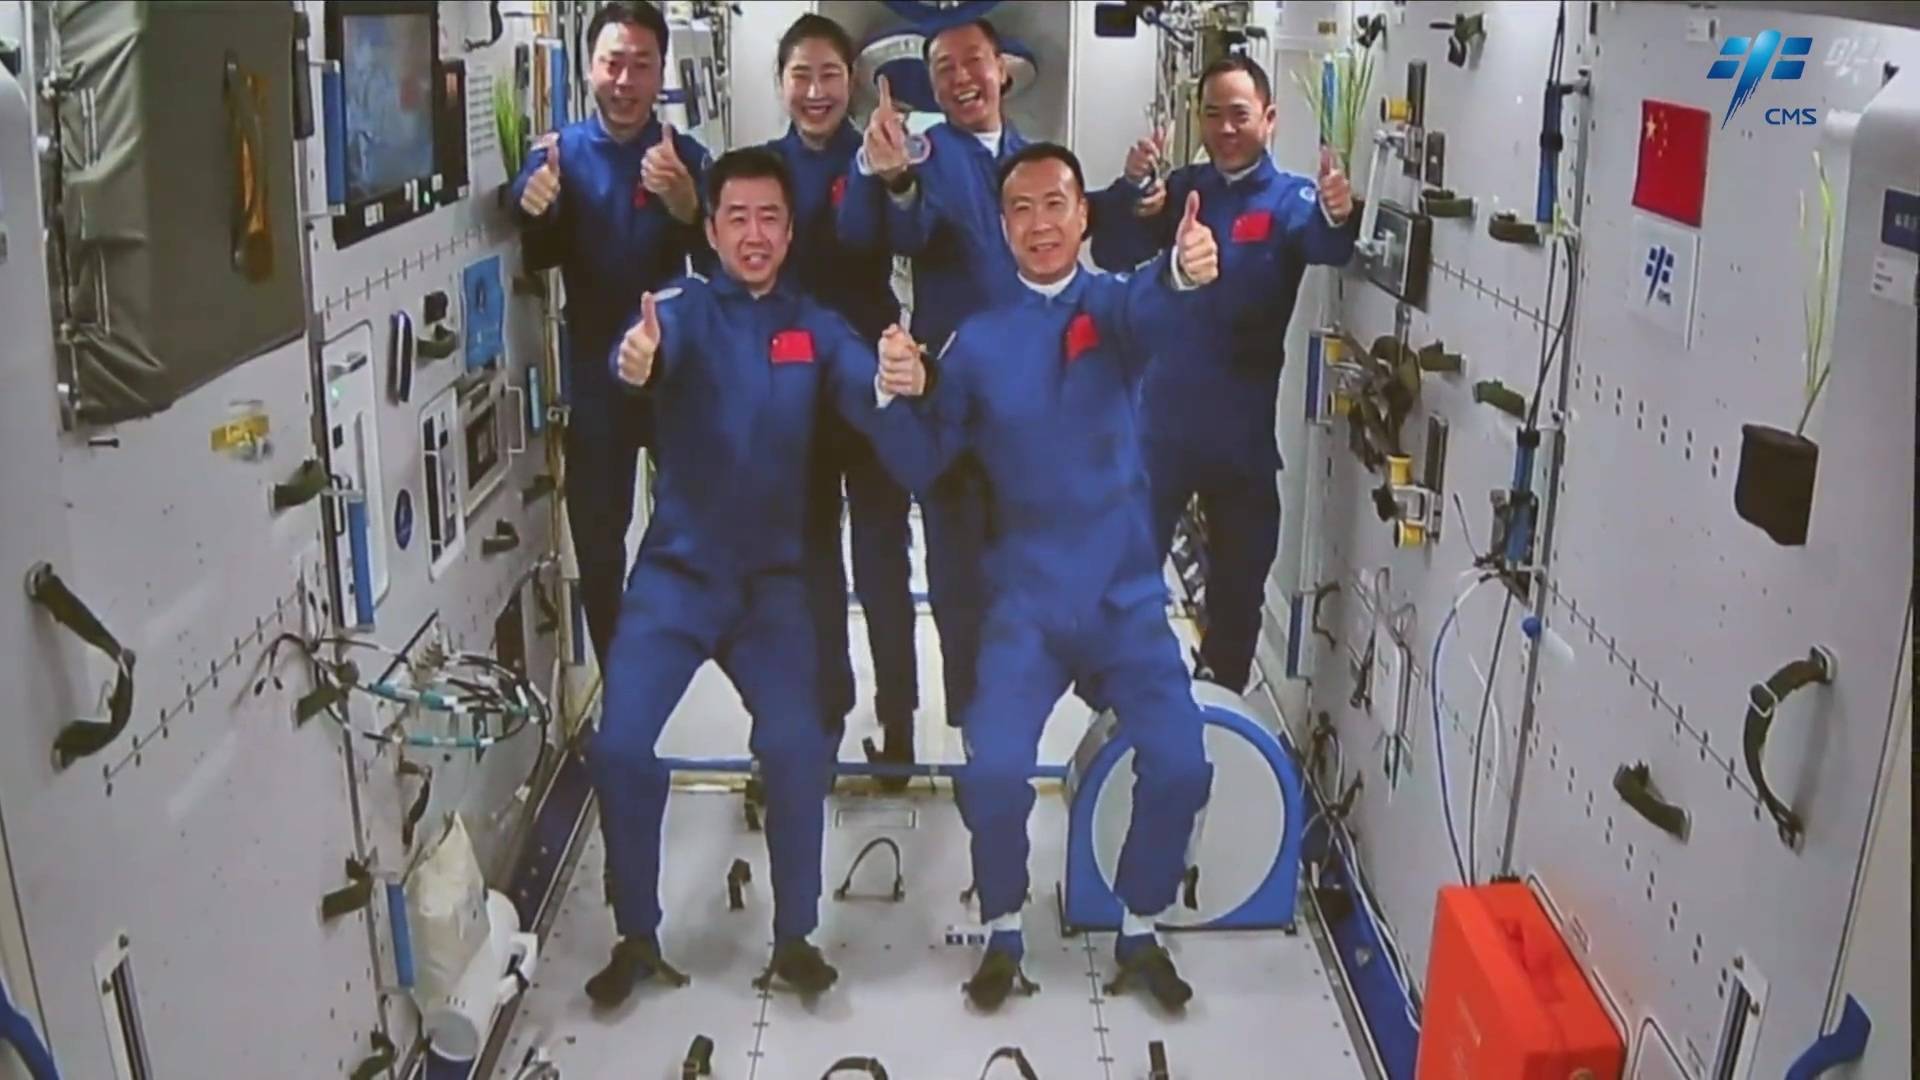 天舟五号与中国空间站2小时完成对接 速度创世界纪录_凤凰网视频_凤凰网